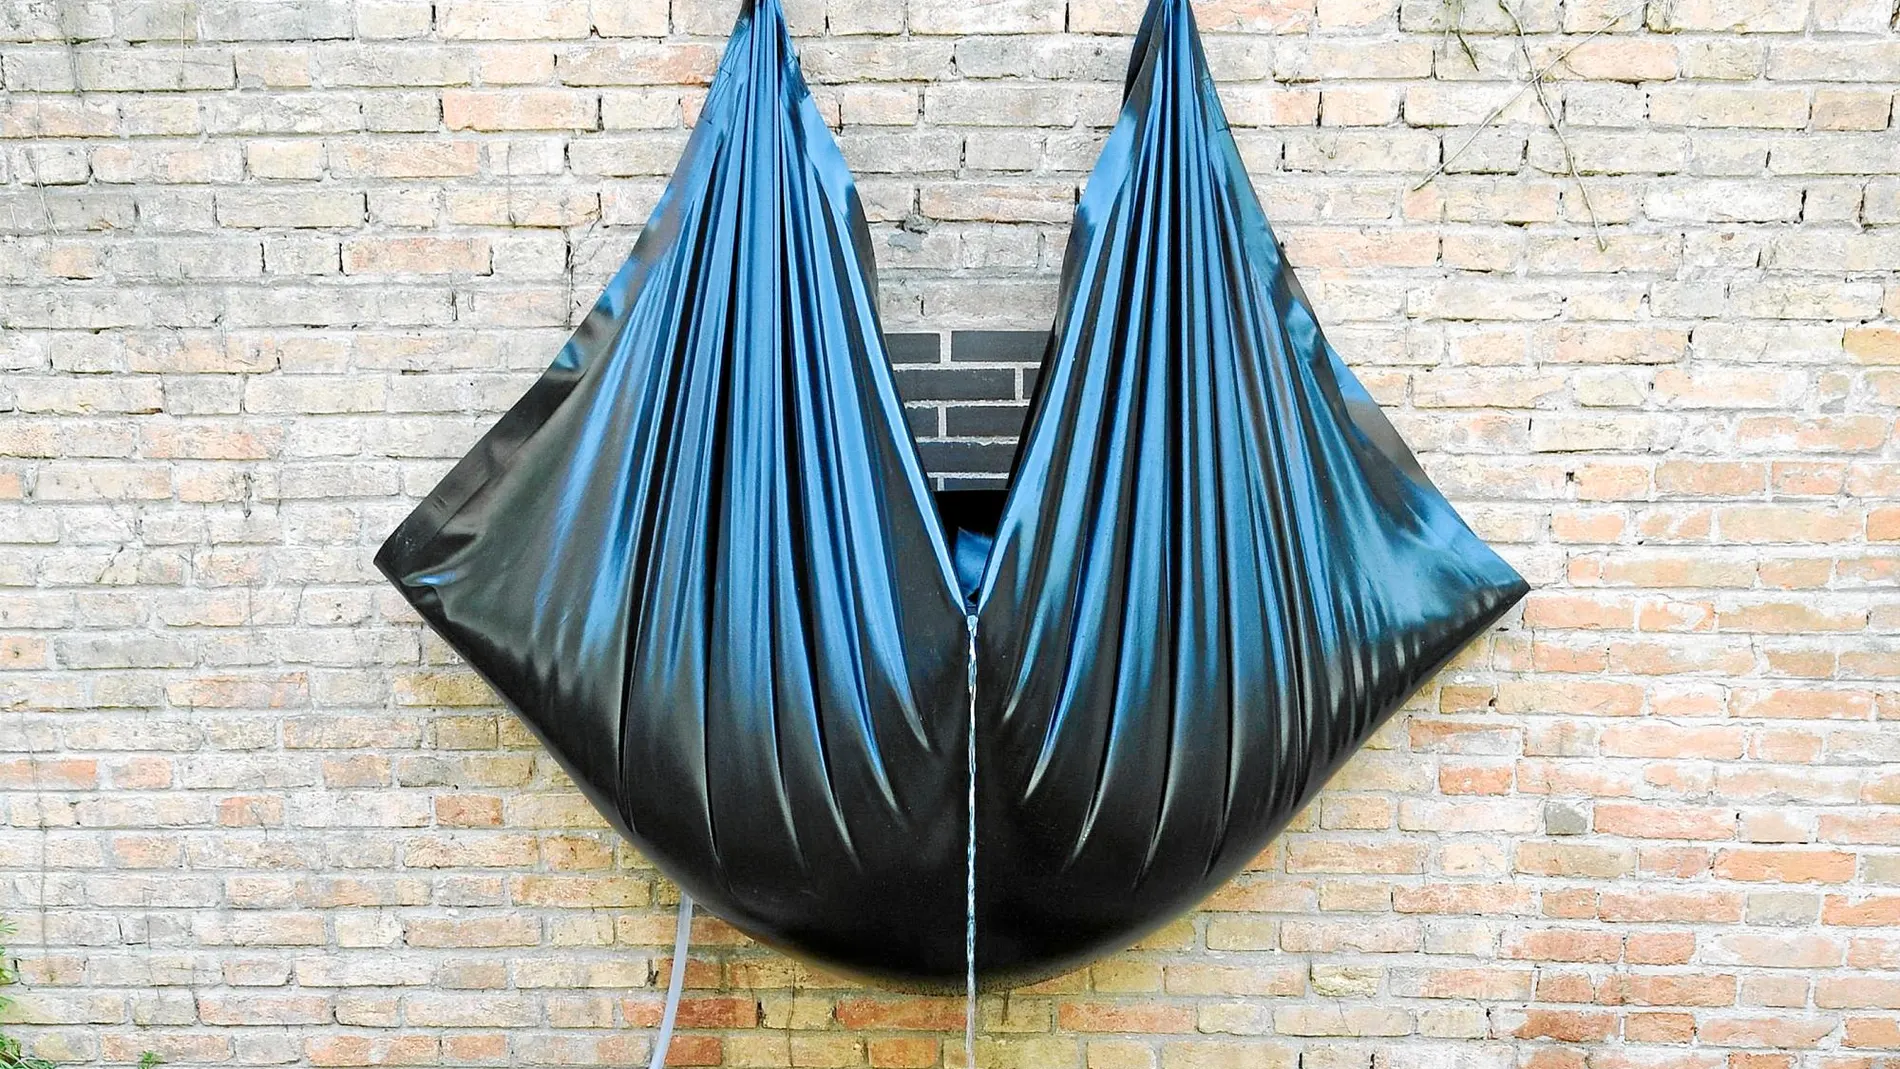 Una de las obras de Sergio Prego instalada ya en el jardín del pabellón español de la Bienal de Venecia. Foto: Claudio Franzini